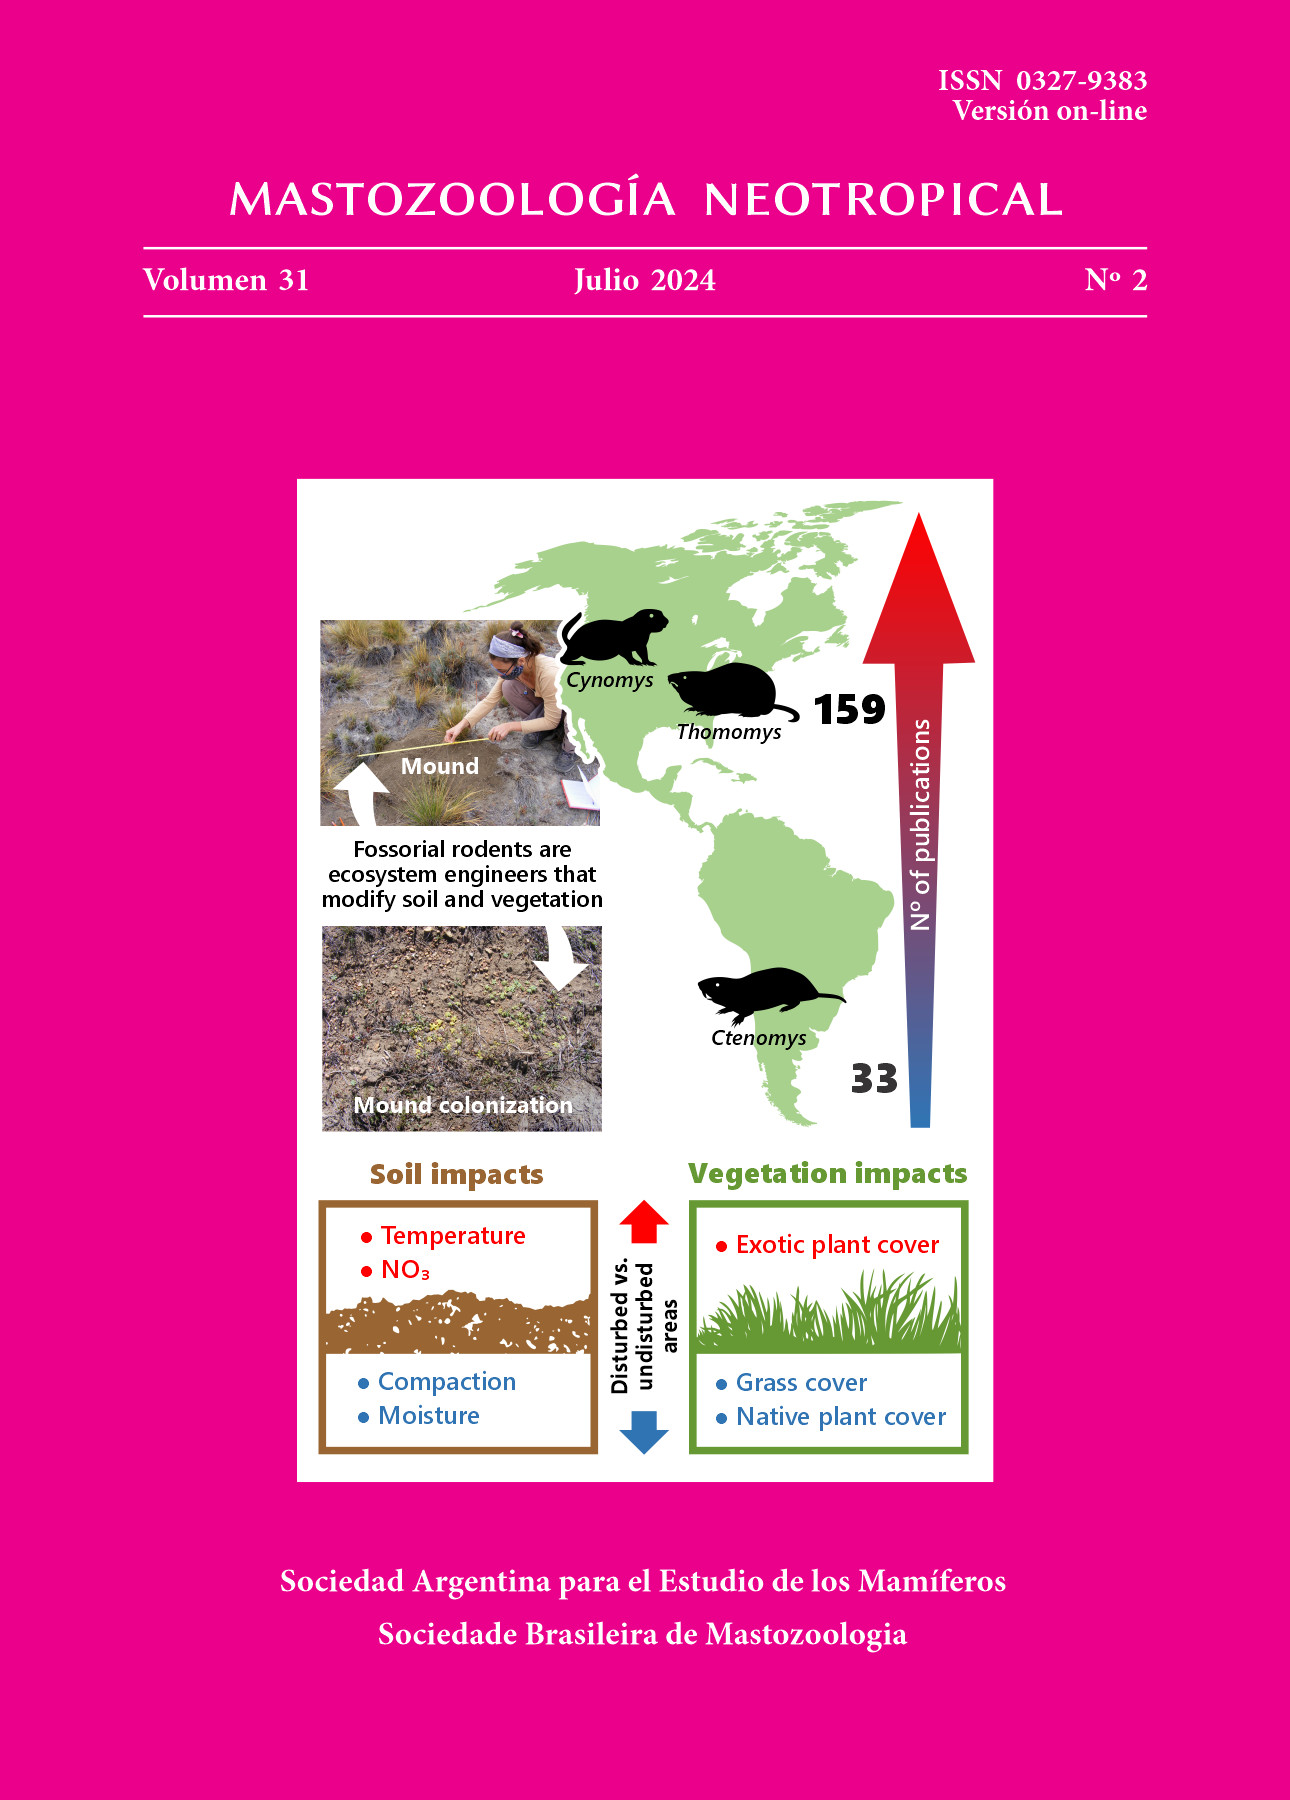 Cover of Mastozoología Neotropical Vol. 31 No. 2